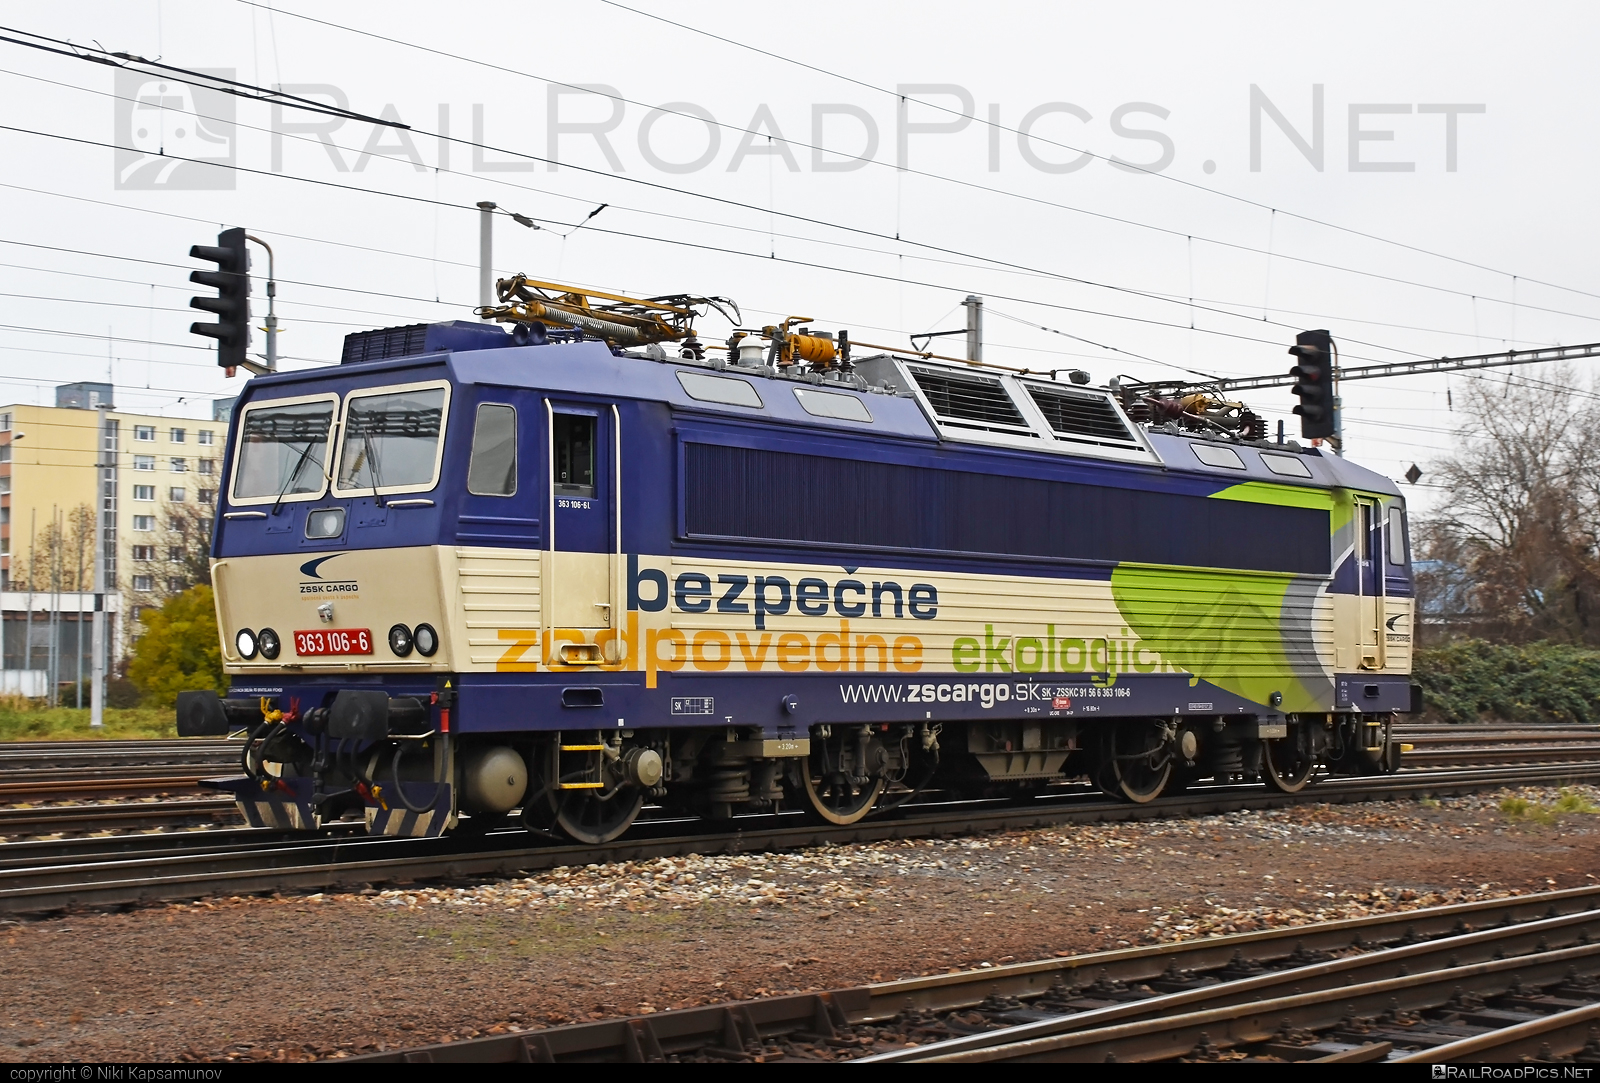 Škoda 69E - 363 106-6 operated by Železničná Spoločnost' Cargo Slovakia a.s. #ZeleznicnaSpolocnostCargoSlovakia #es4991 #eso #locomotive363 #skoda #skoda69e #zsskcargo